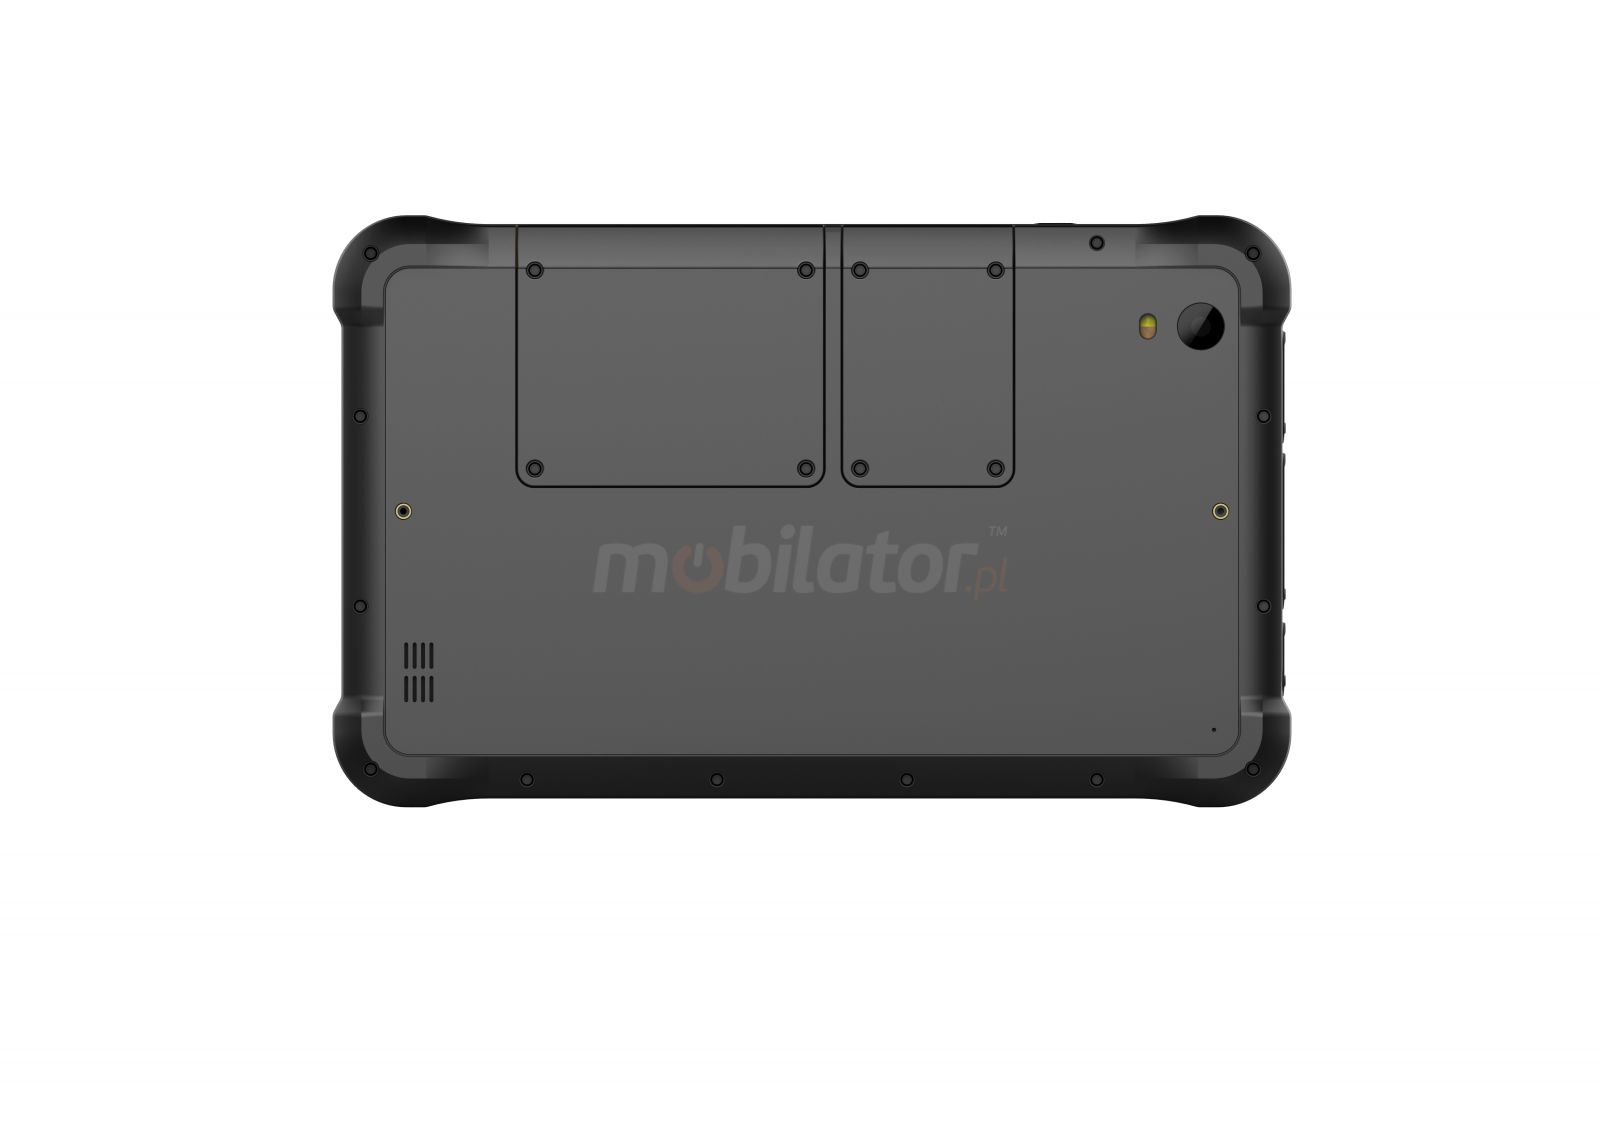 Emdoor Q75 v.8 - odporny tablet z norm MIL-STD-810G, Androidem 10.0 GMS, 4GB RAM, 64GB ROM, UHF RFID oraz skanerem 1D Honeywell